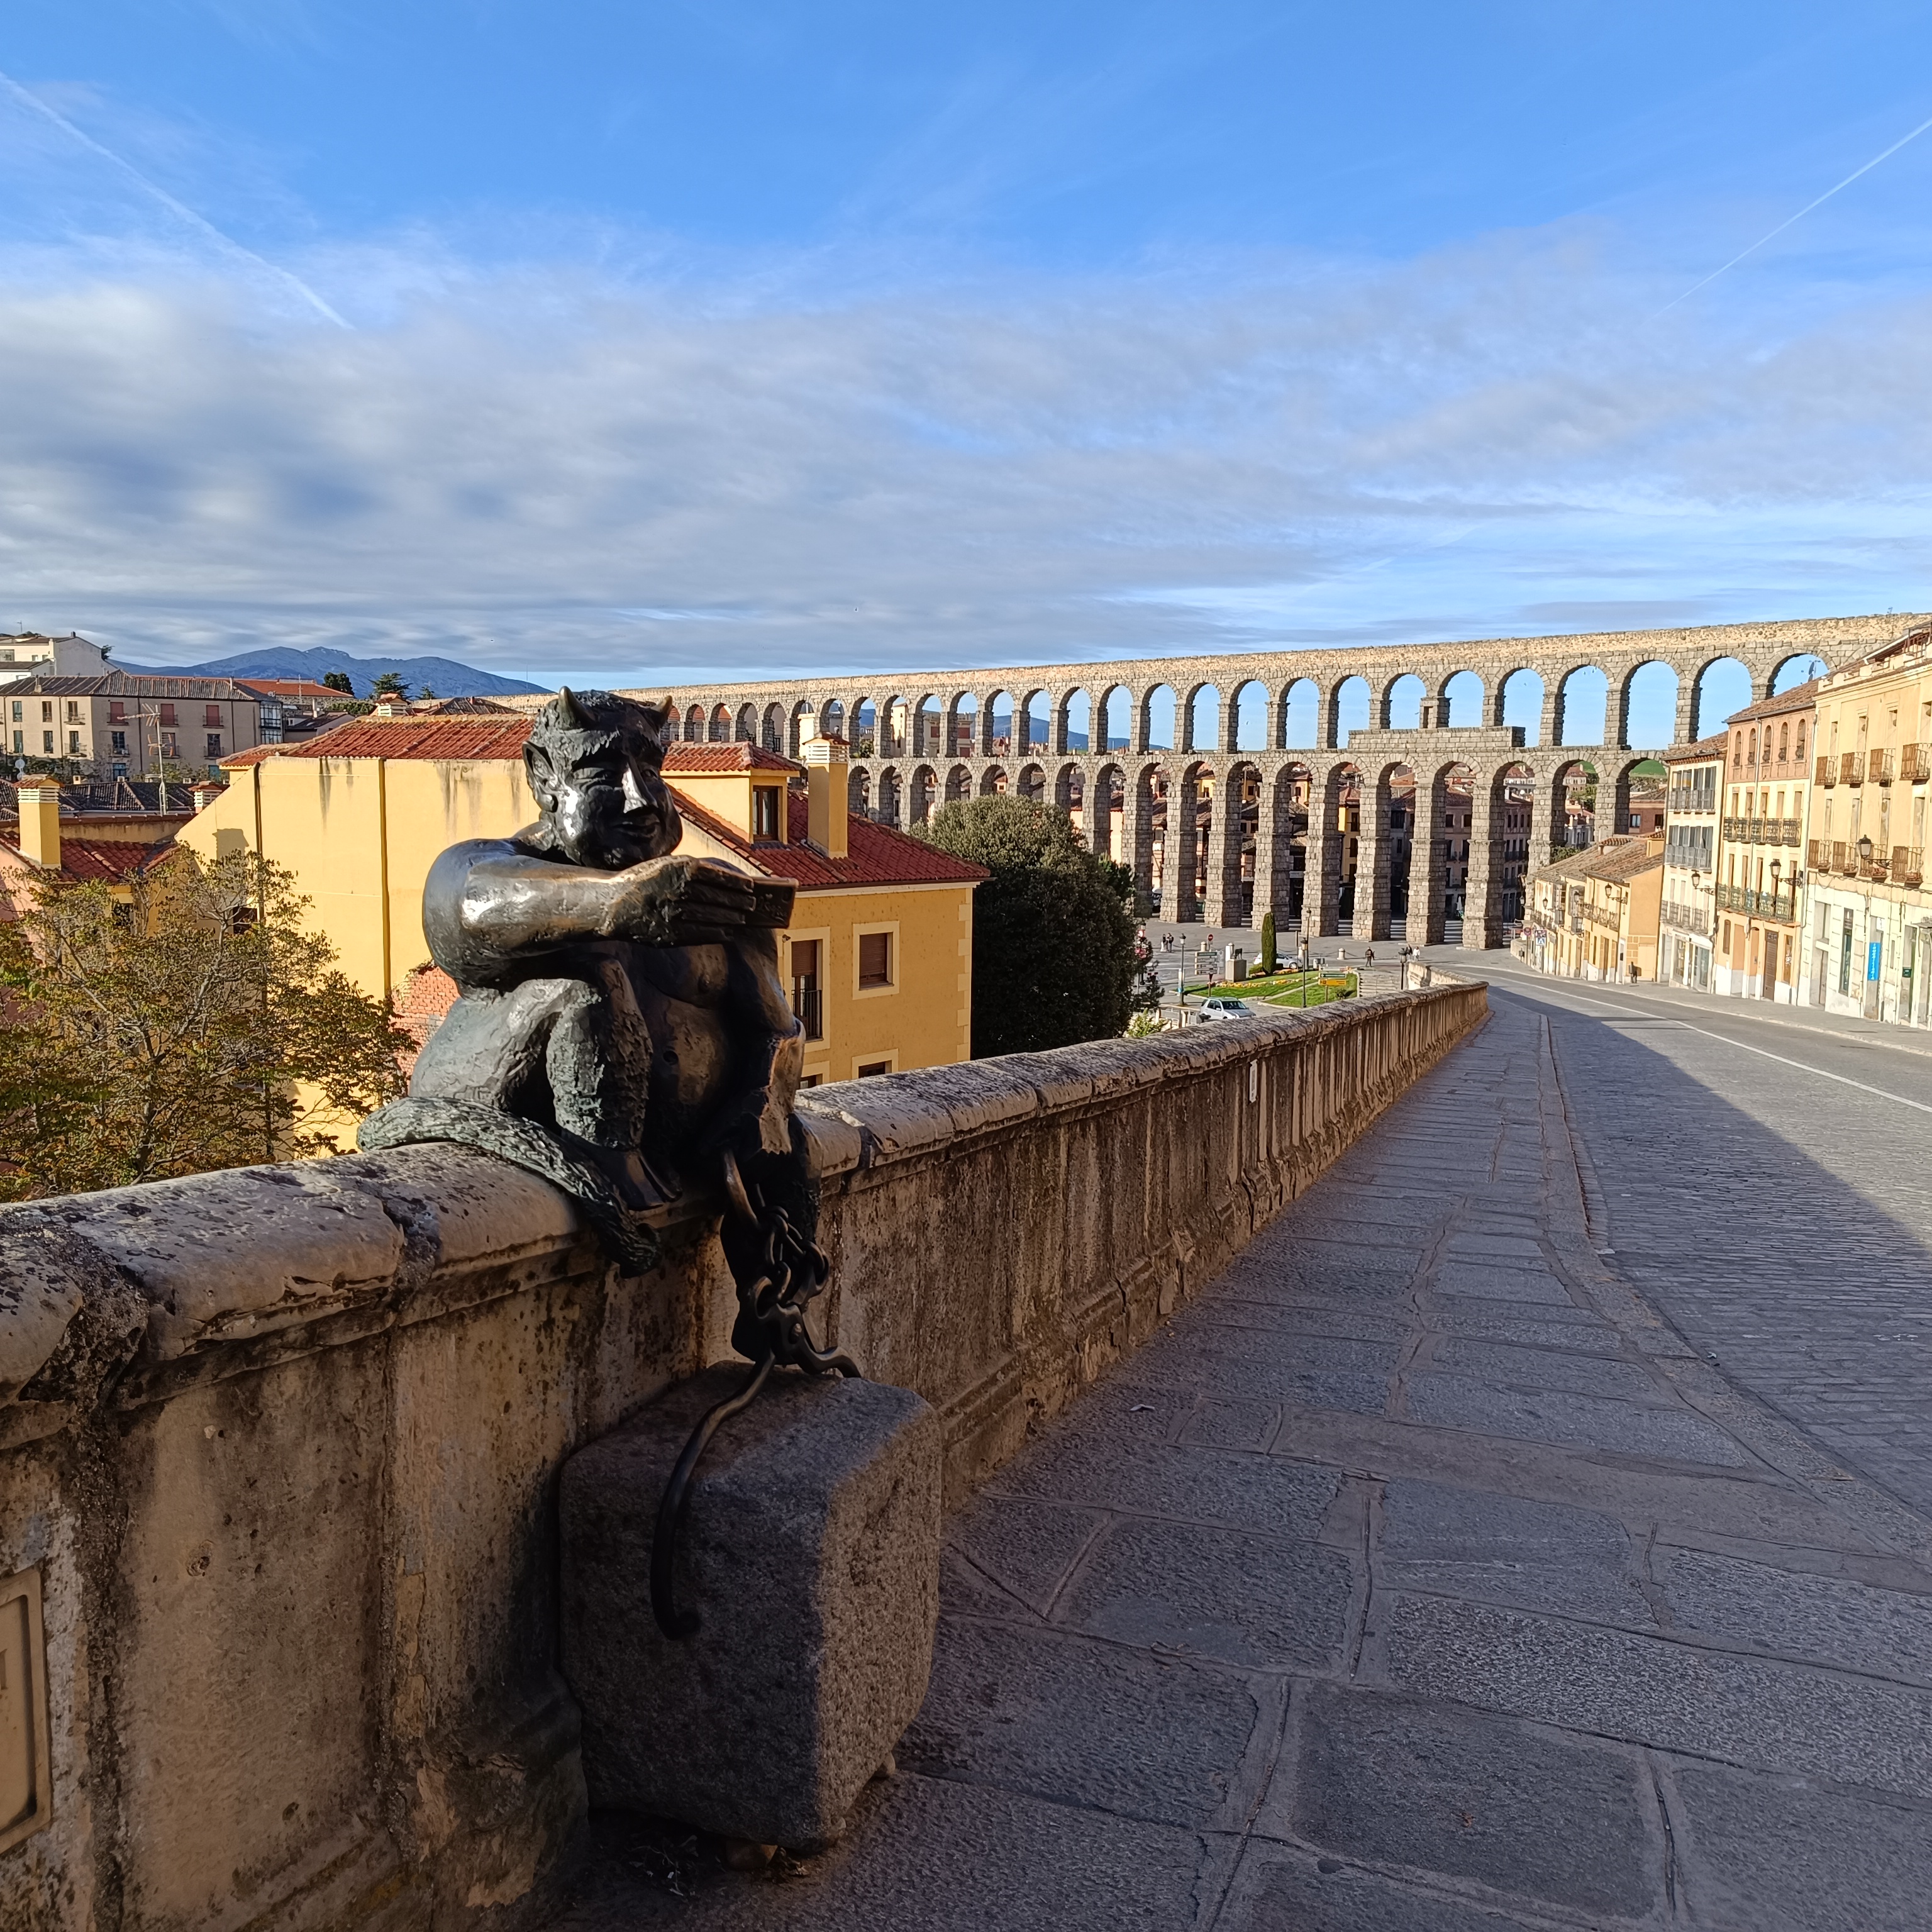 Vamos a descubrir que hacer en Segovia España.
Selfie diablo con el acueducto de Segovia.